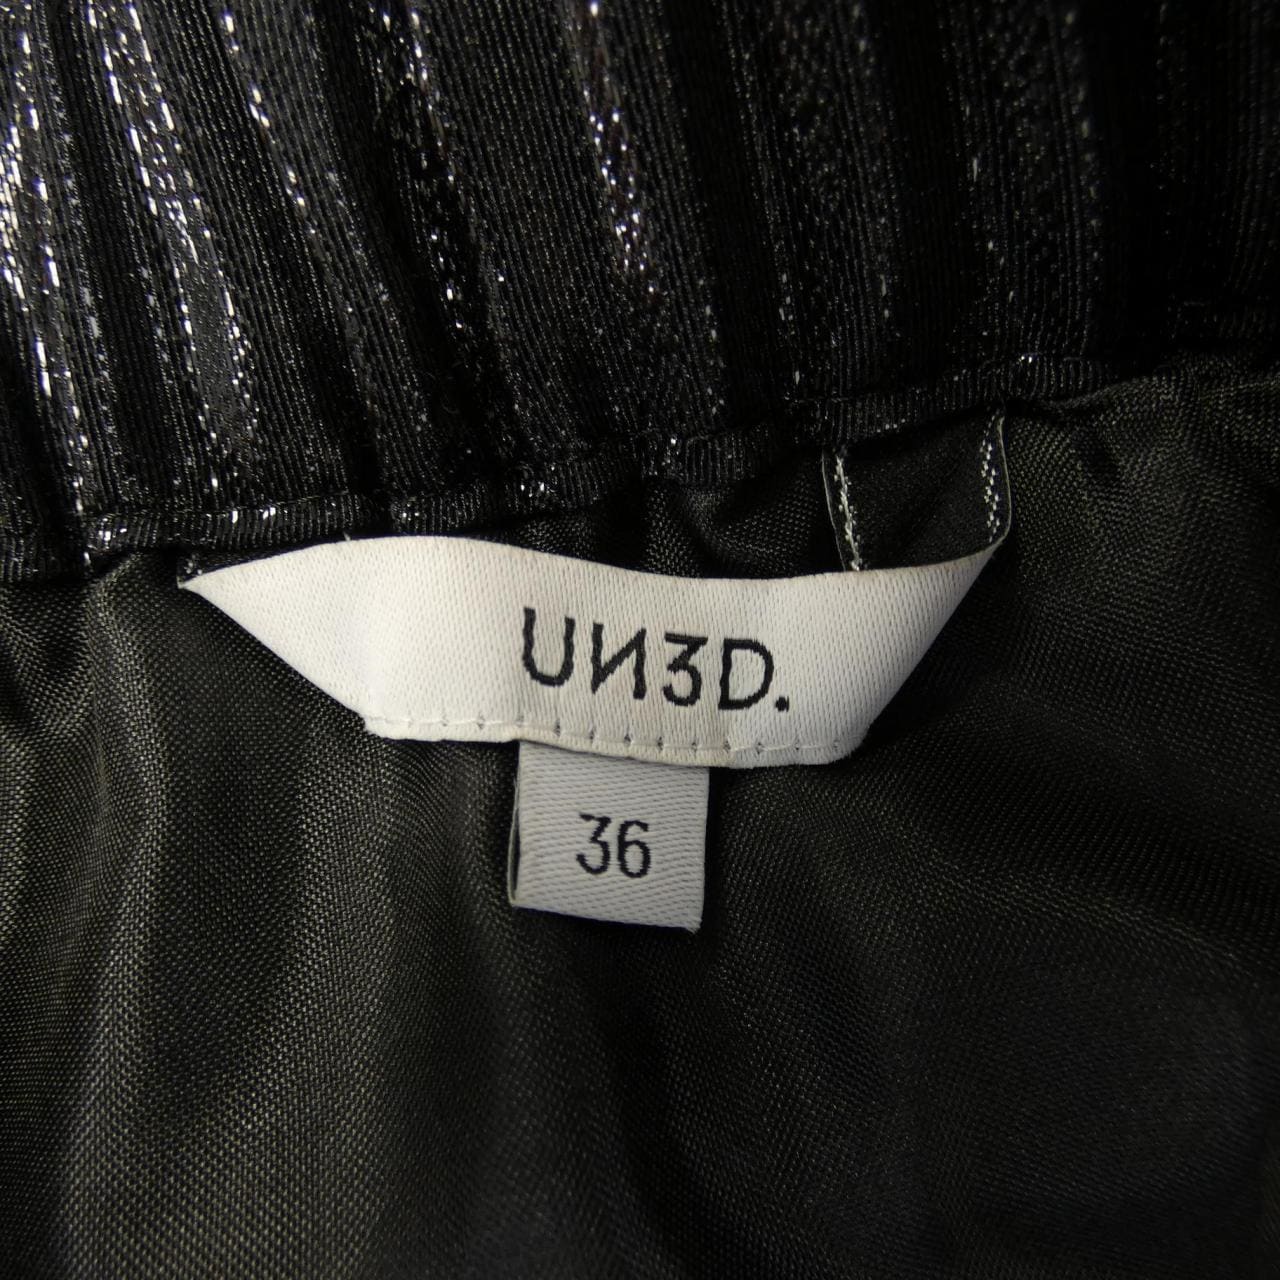 吊带UN3D裙